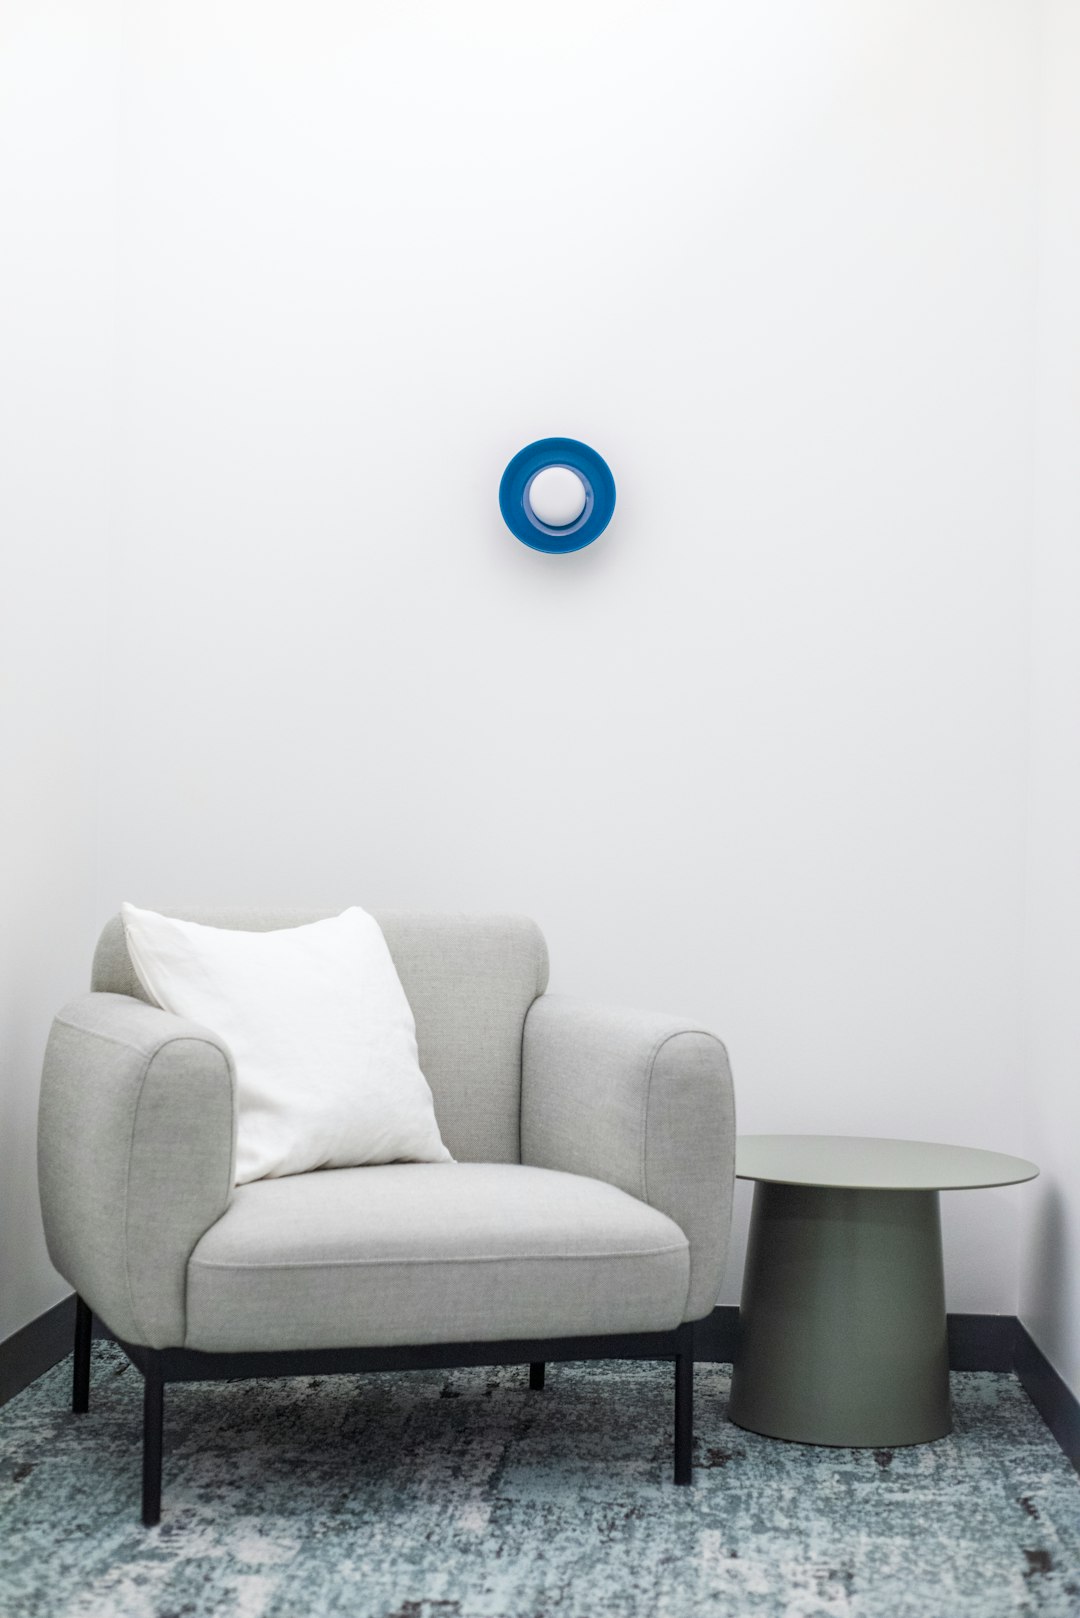  blue round ball on grey sofa armchair